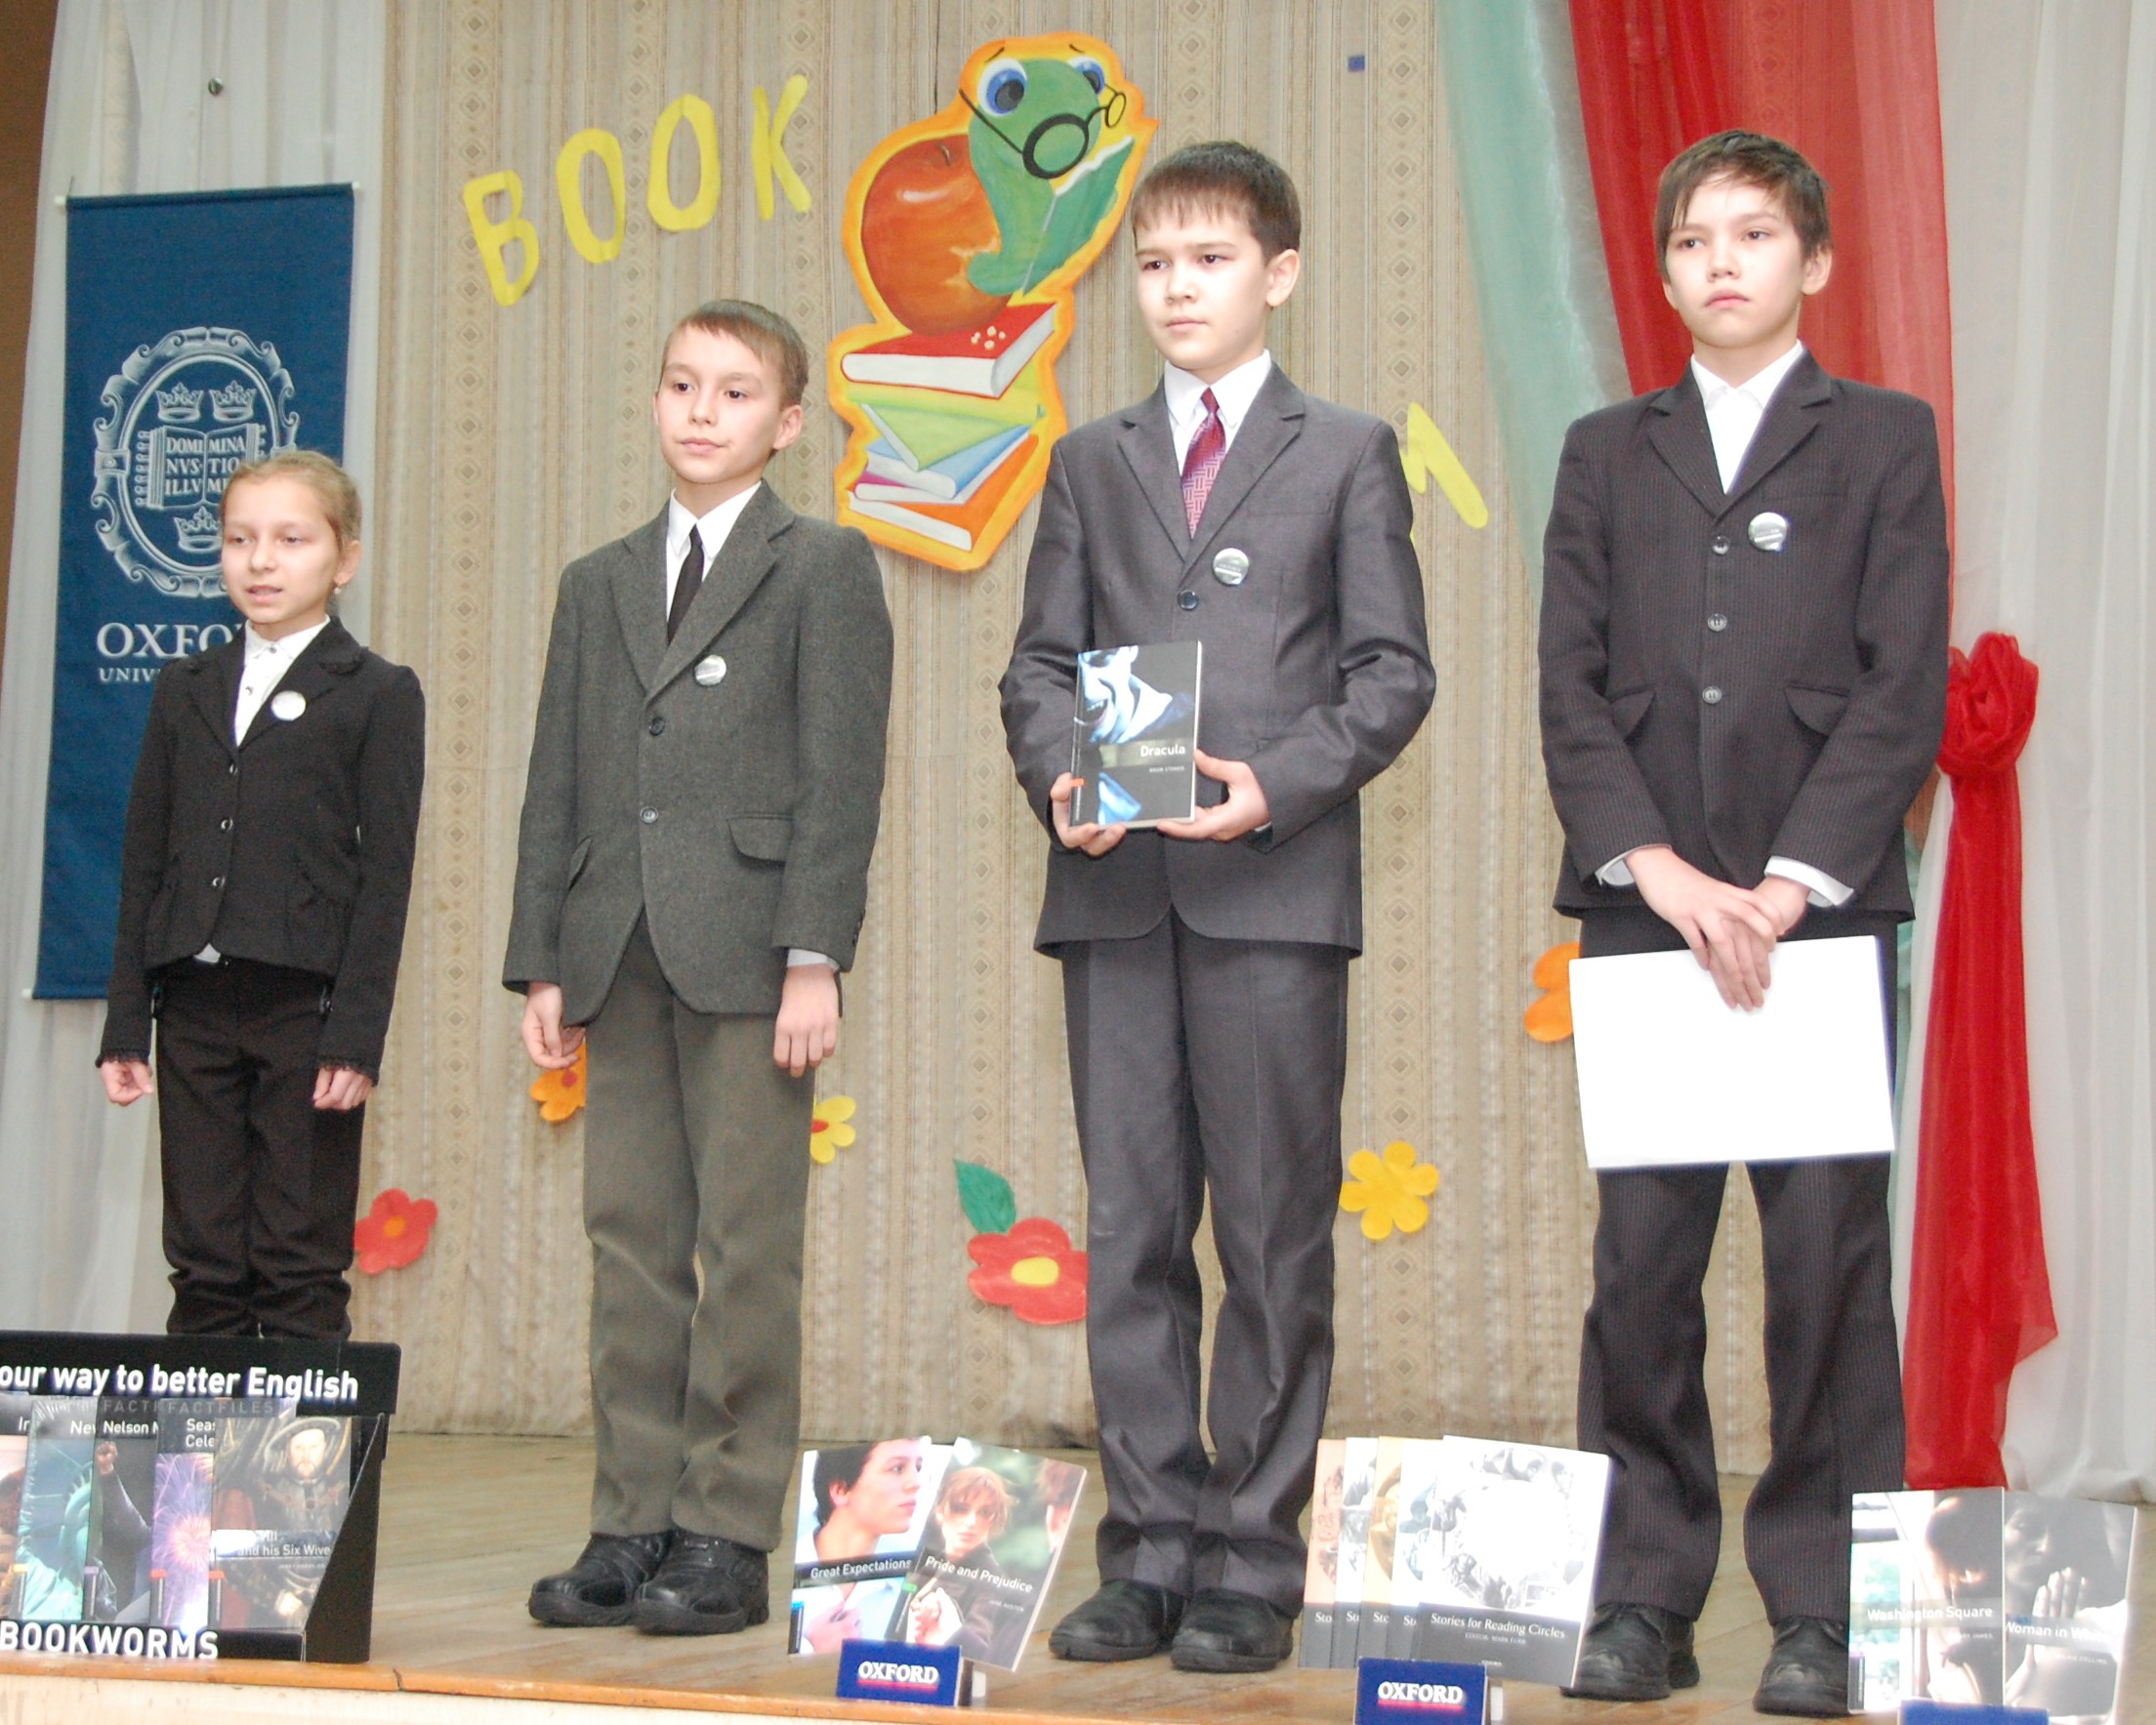 Поздравляем победителей республиканского конкурса школьных команд по английскому языку для учащихся общеобразовательных учреждений «Book Worms»